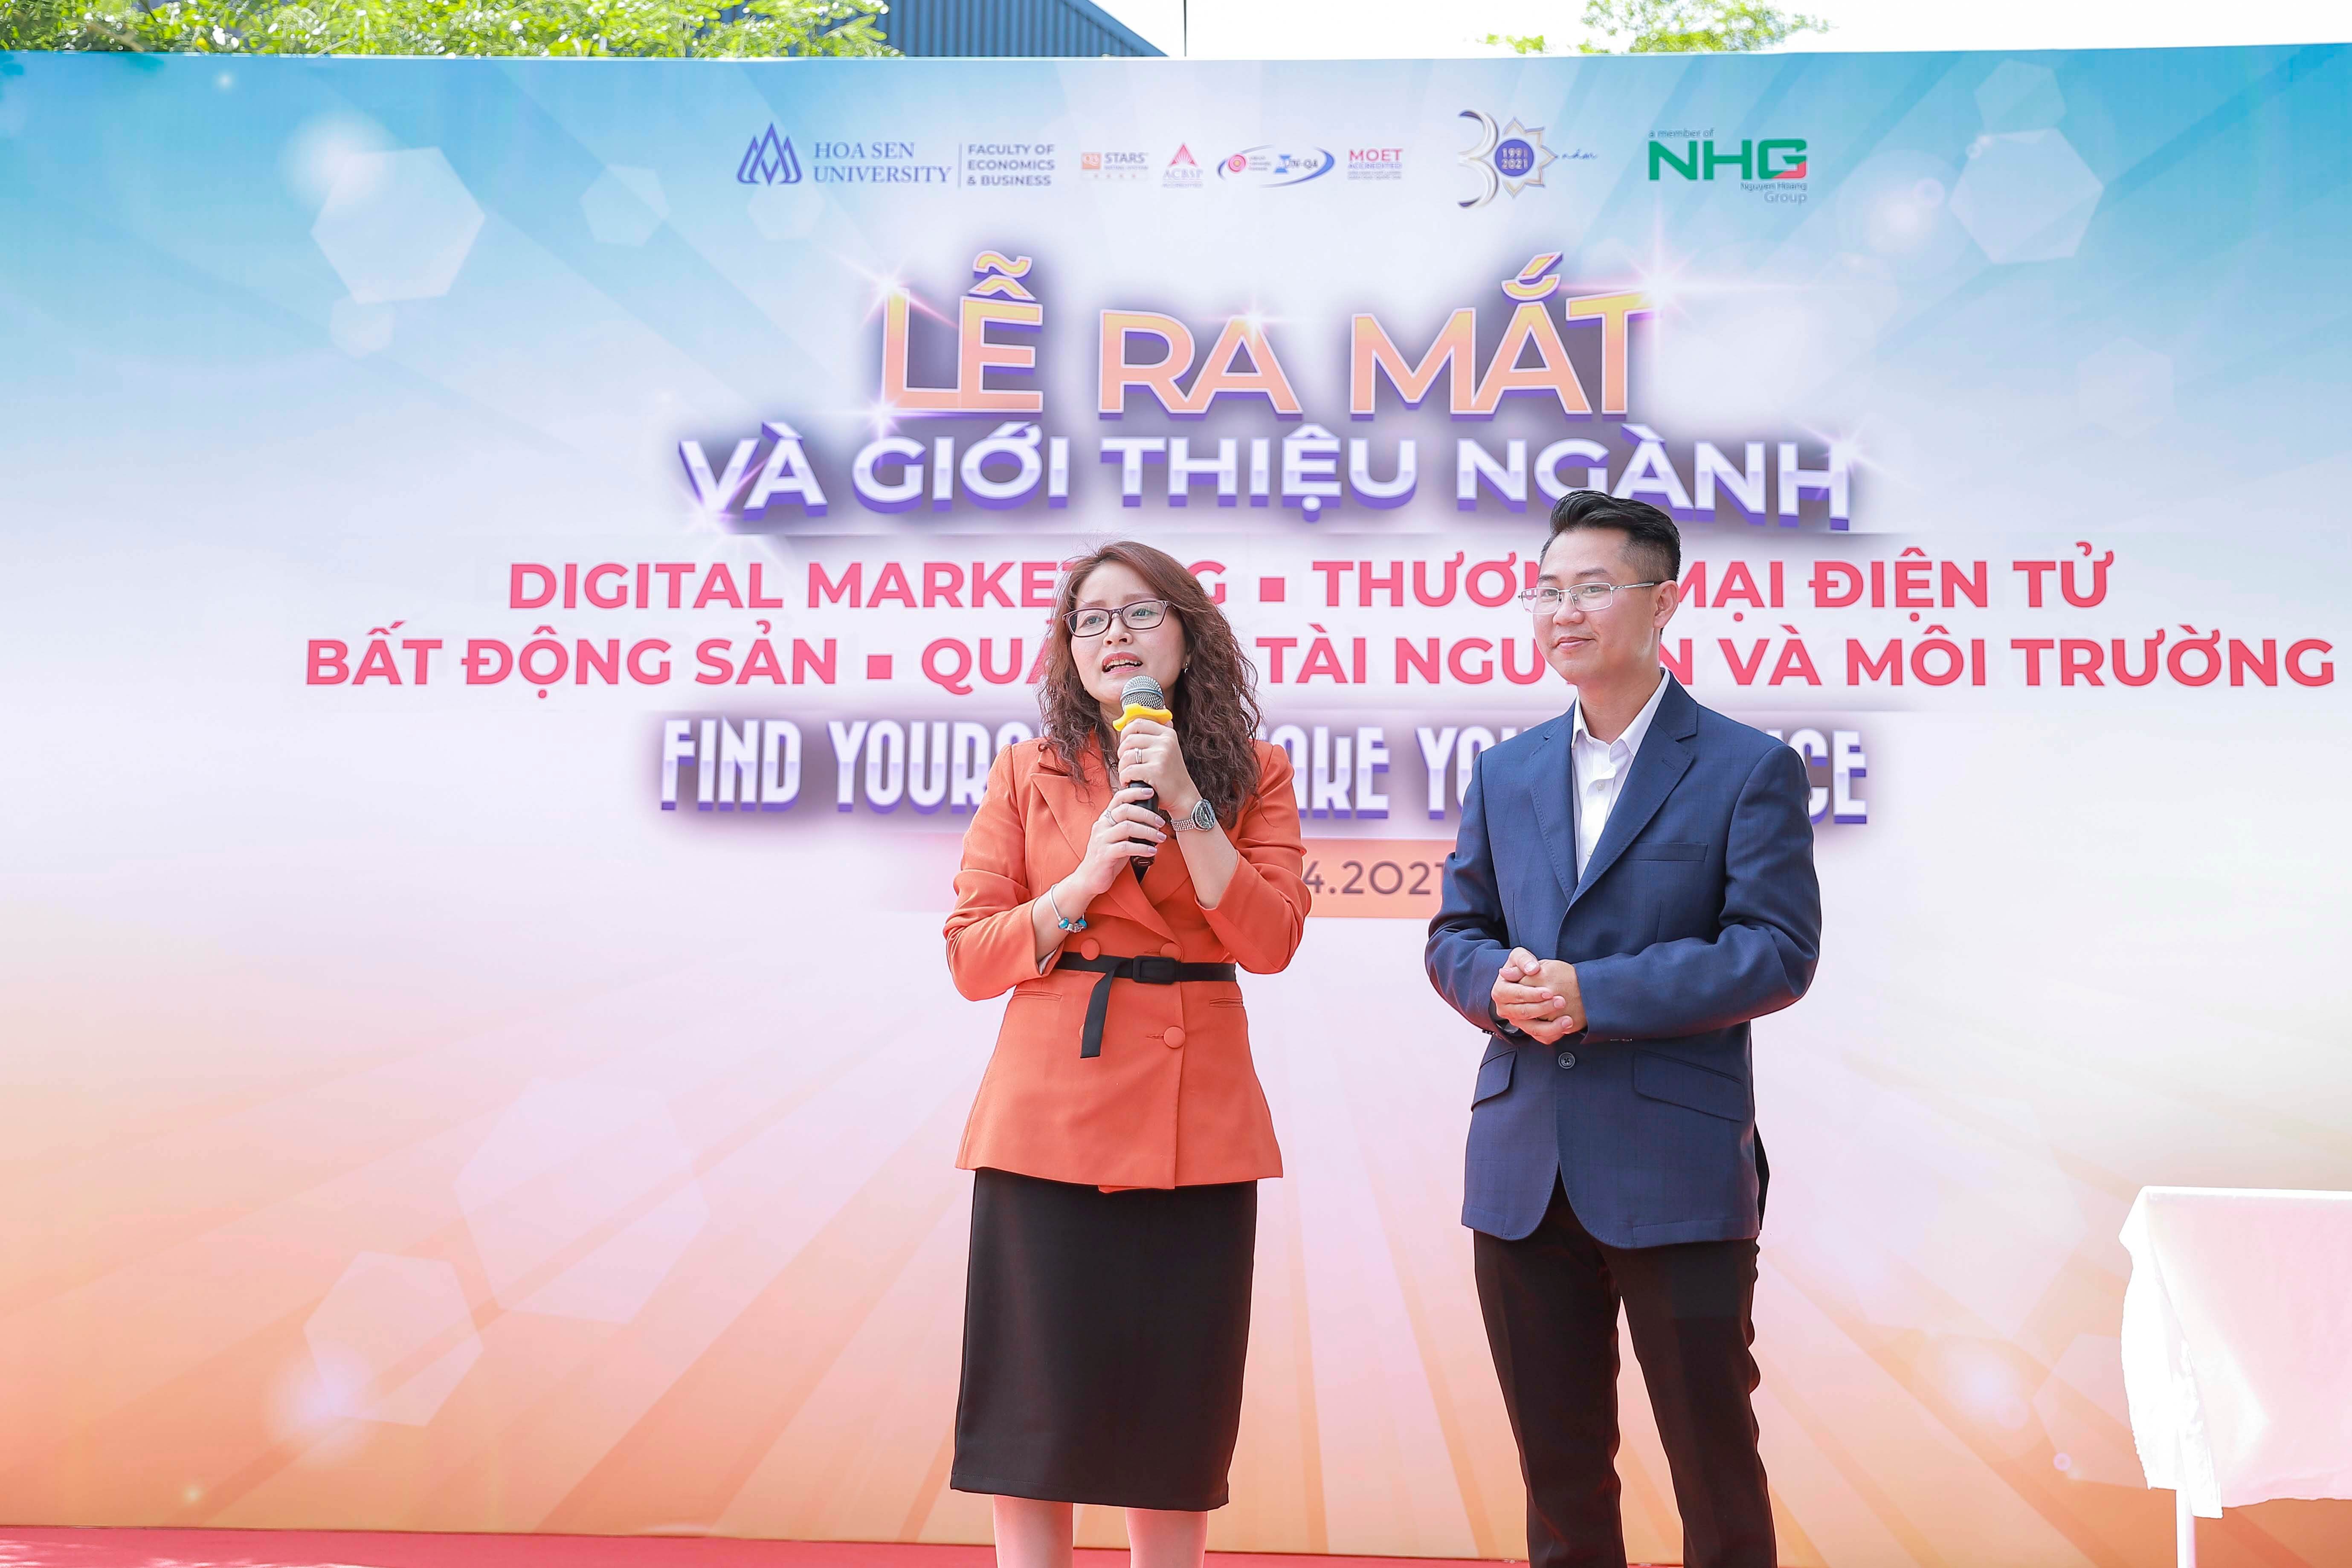 Bà Nguyễn Thị Thu Thủy – Trưởng khu vực kinh doanh - Công ty TNHH Bảo hiểm Hanwha Life Việt Nam